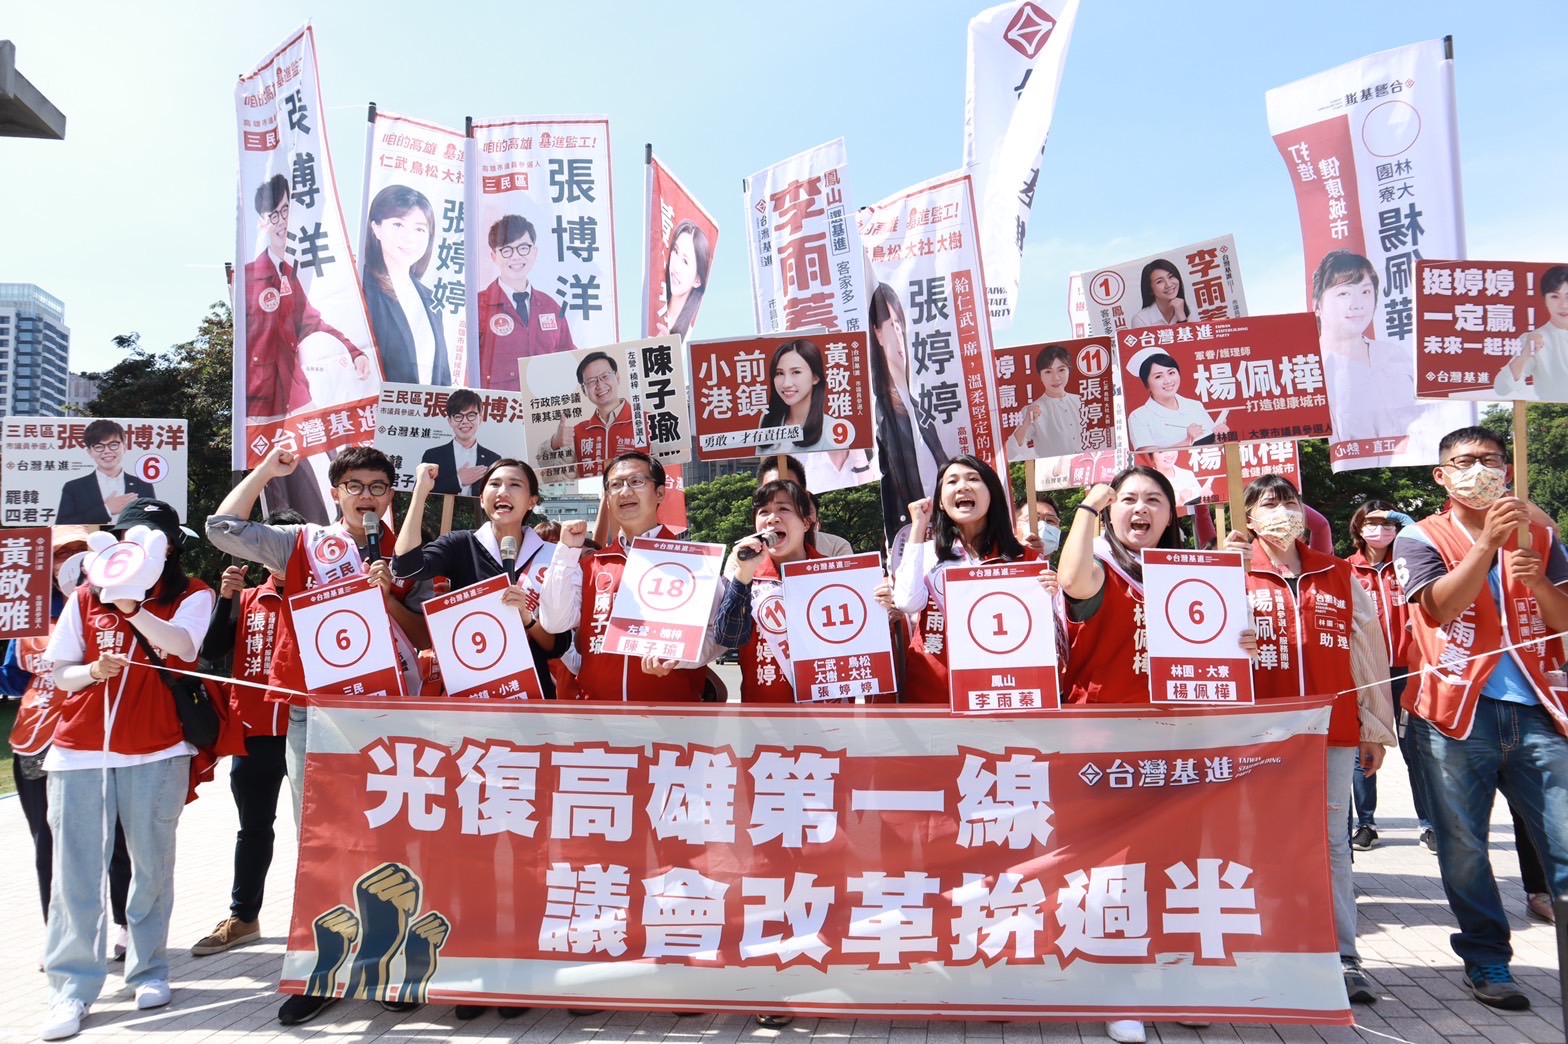 台灣基進高雄七位市議員候選人喊出「光復高雄第一線，議會改革拚過半」